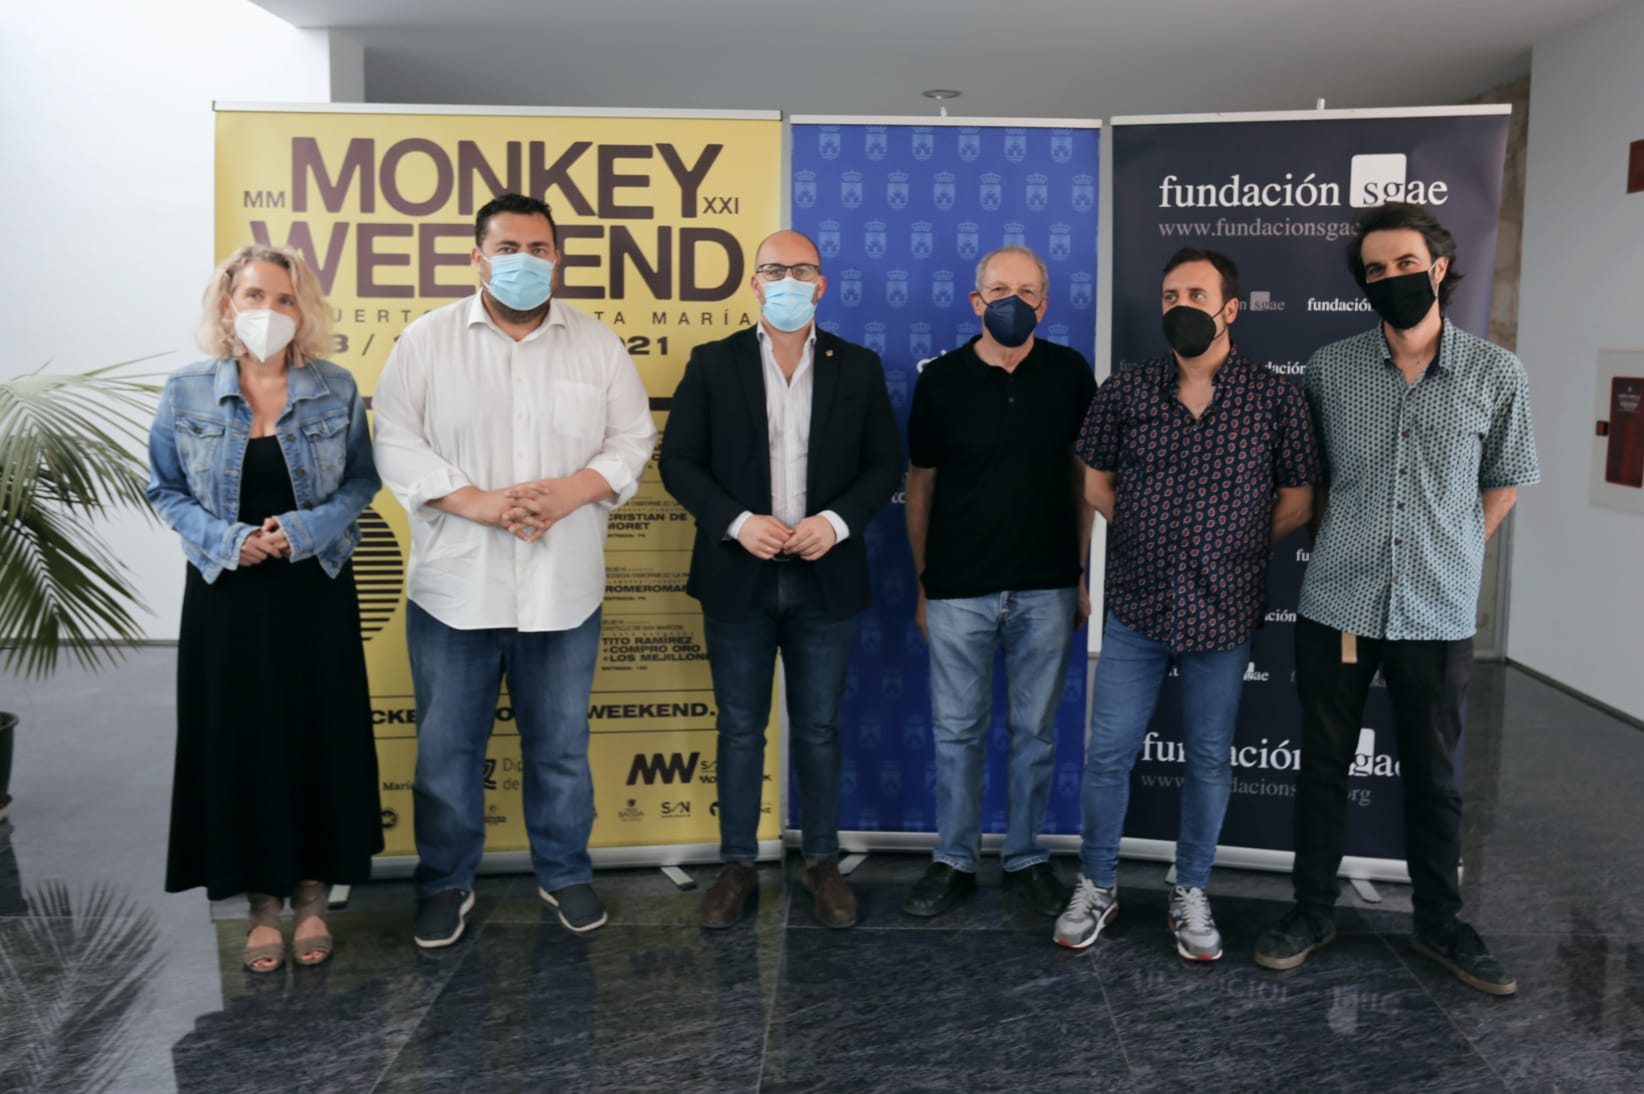 La presentación del Monkey Weekend, este jueves.